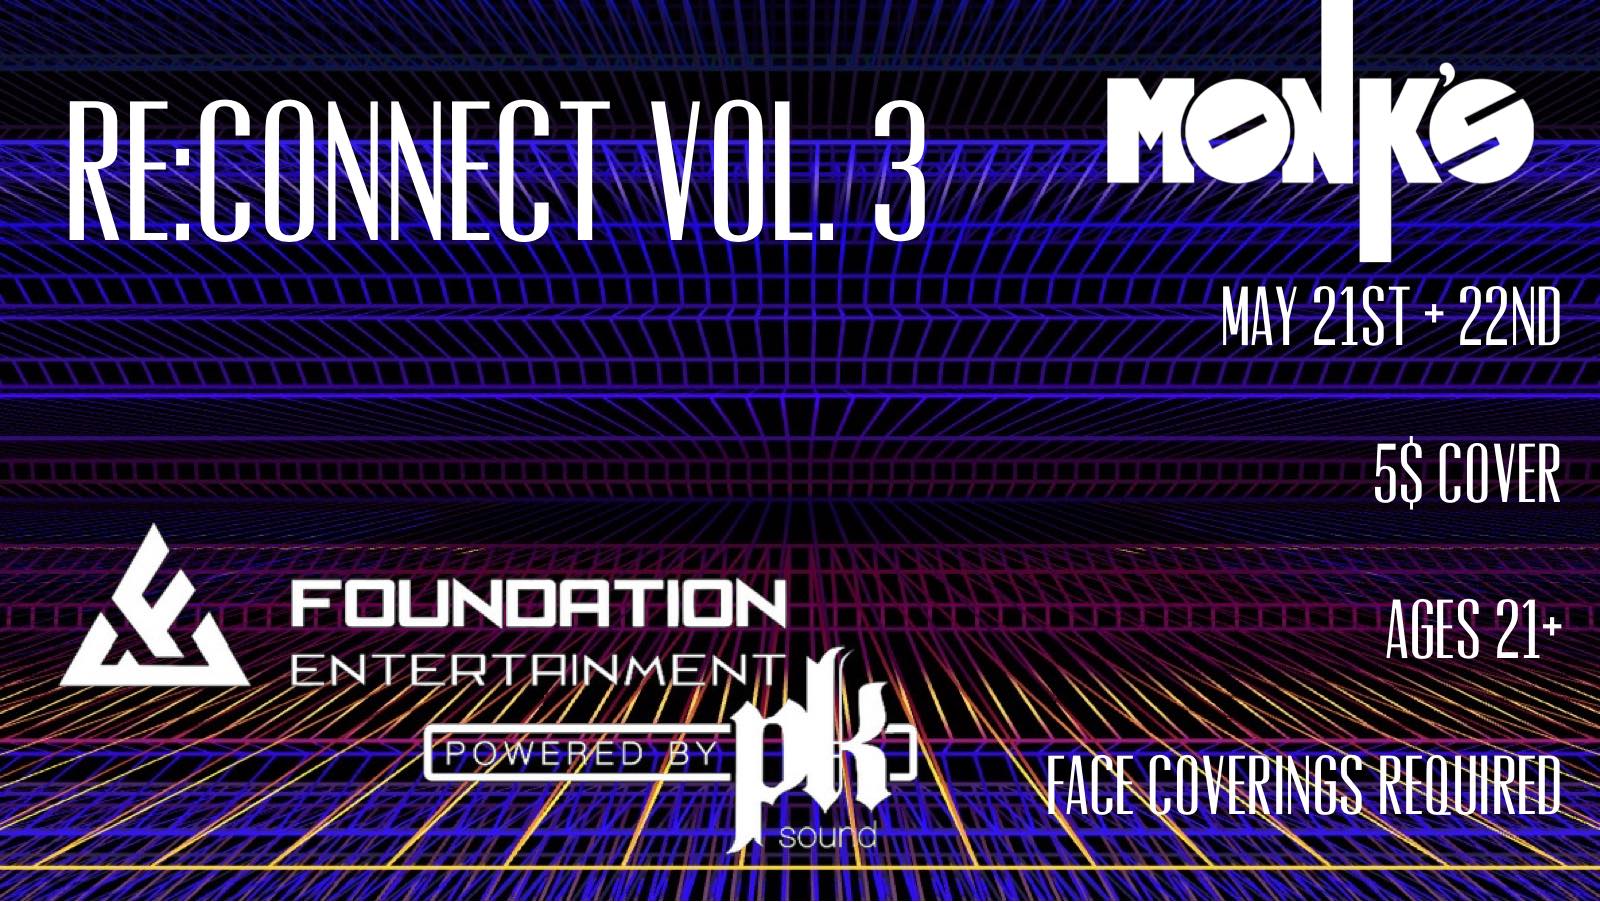 Re:Connect Vol 3 @ Monk's Bar